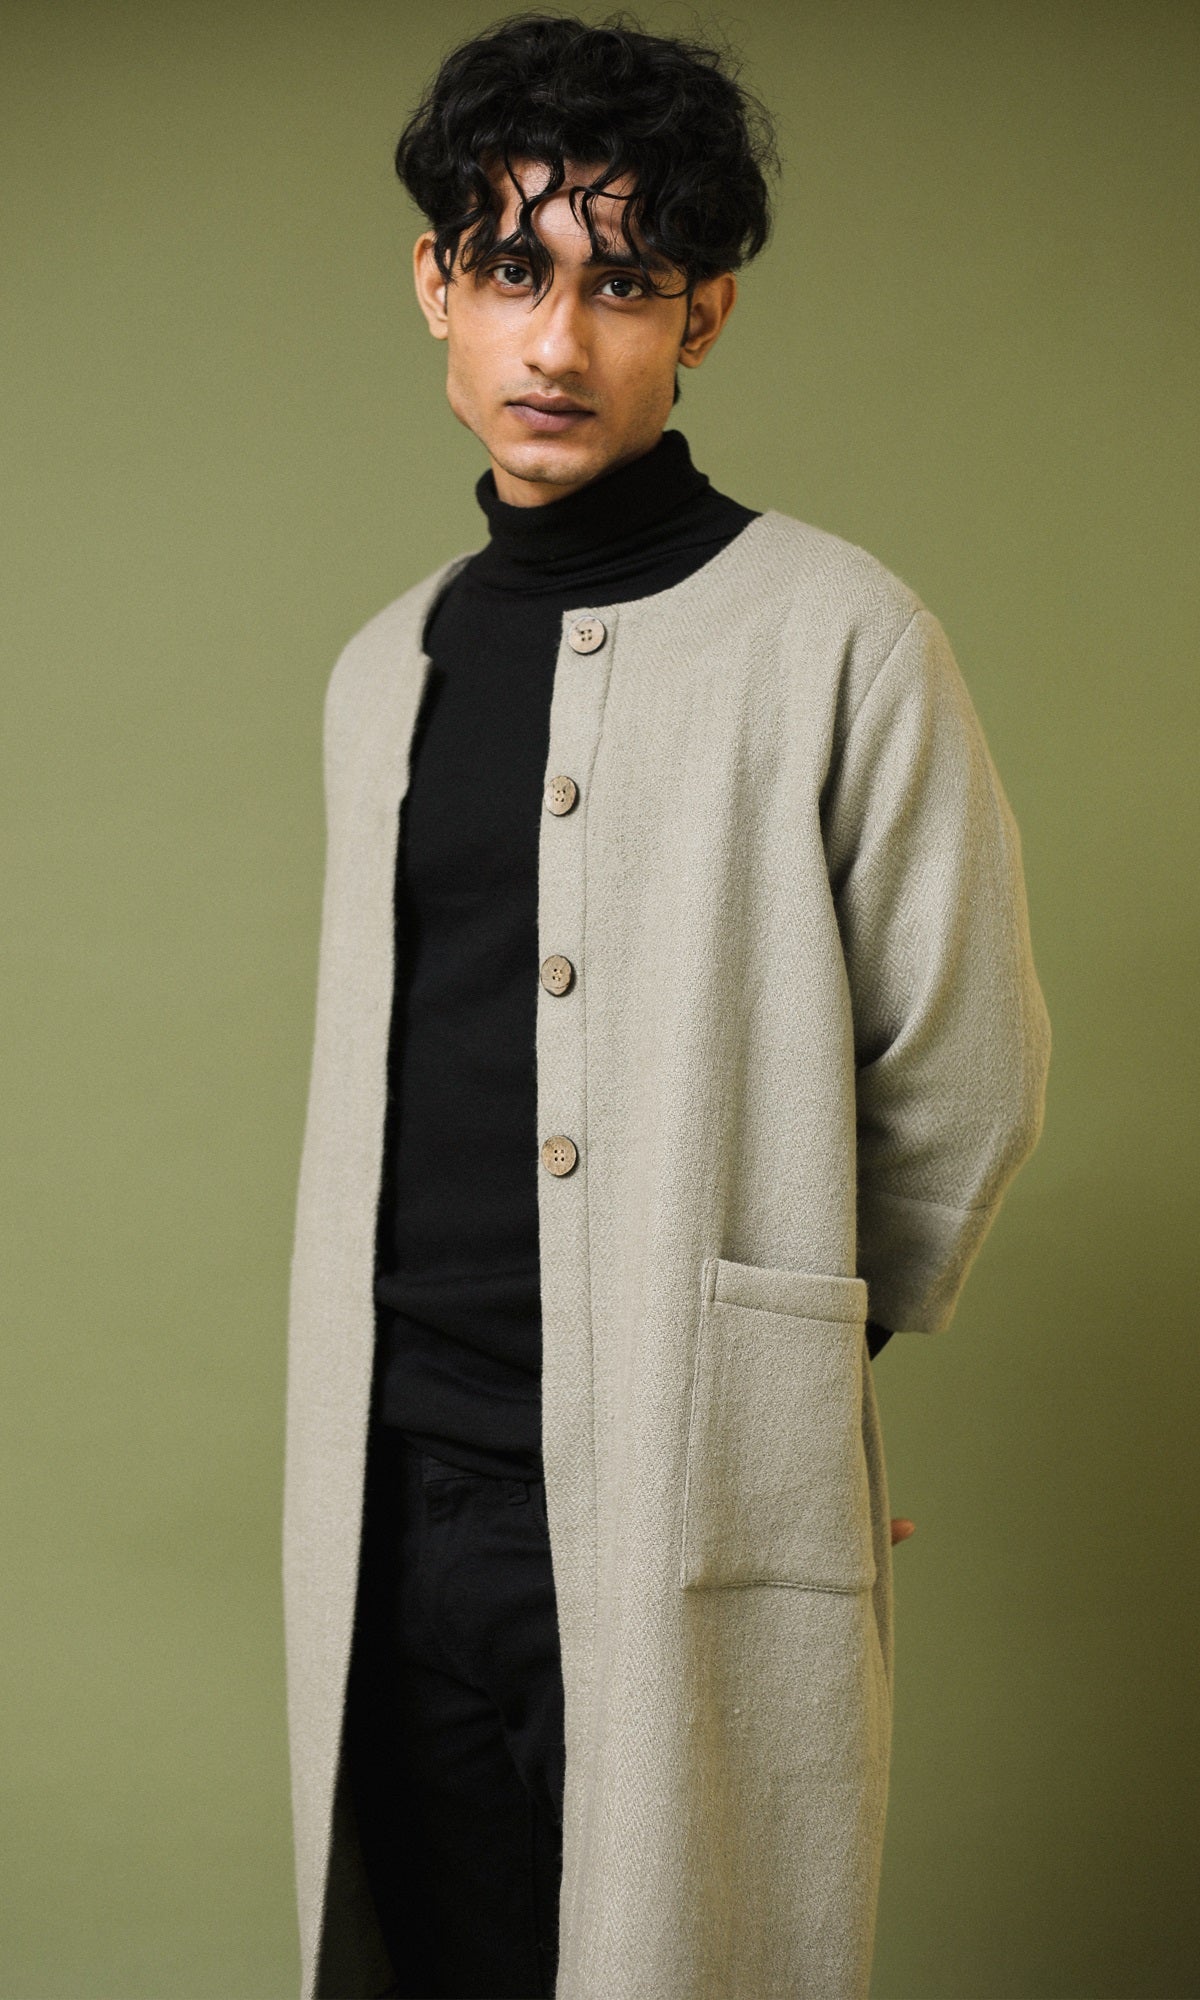 Heer Grey Handwoven Woollen A-line Long Jacket with Sleeves